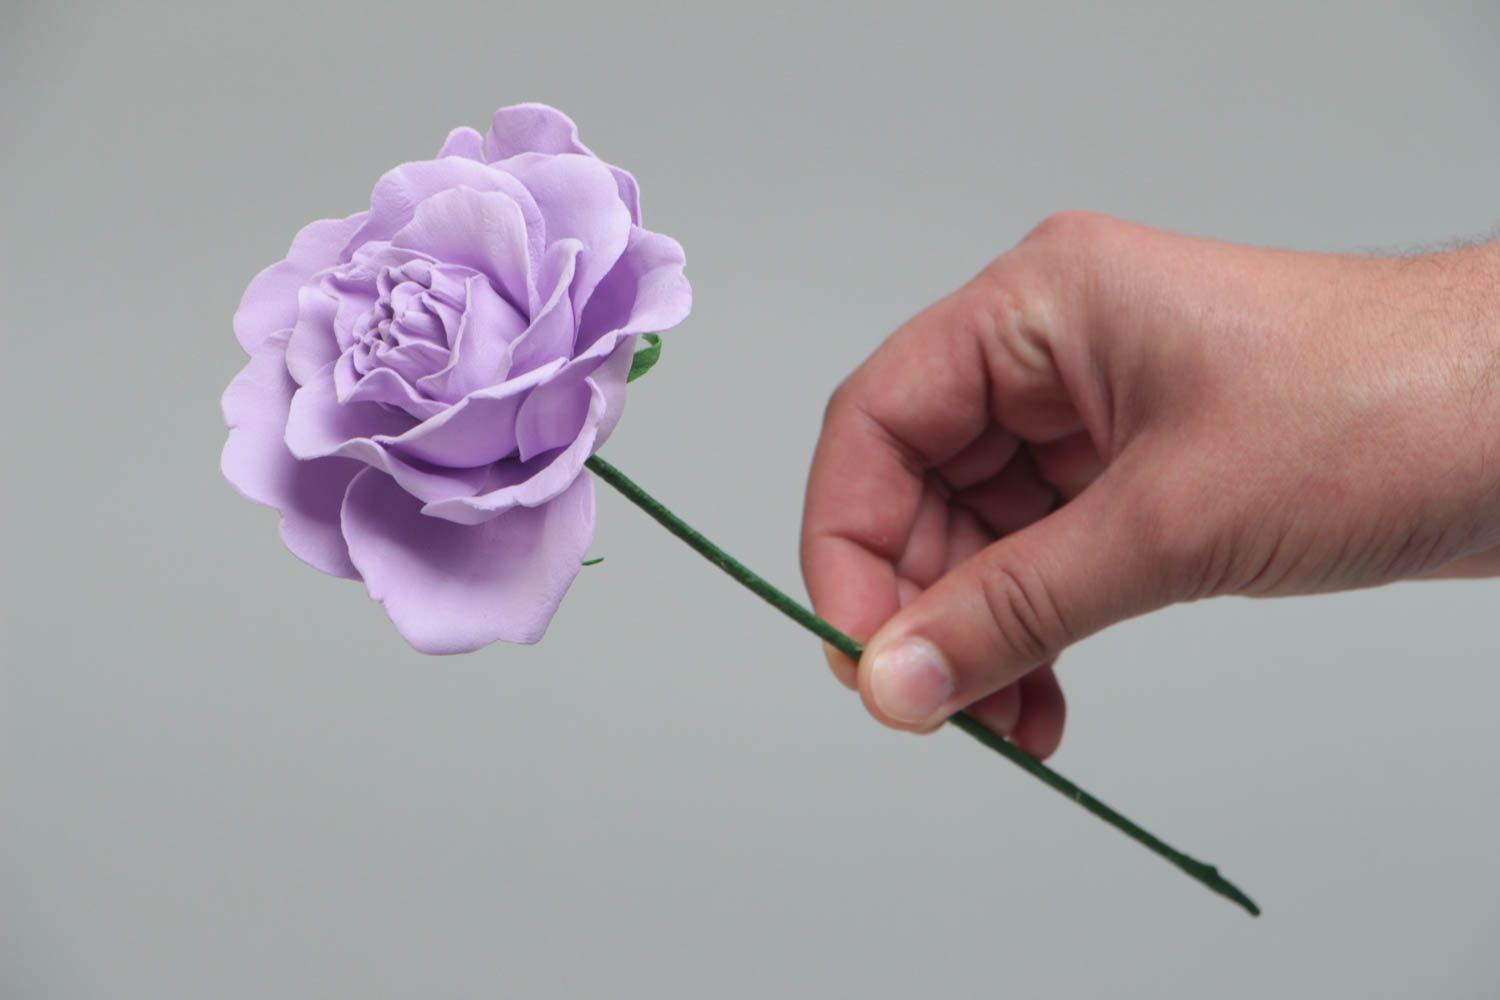 Сиреневая роза из фоамирана красивый цветок для декора дома ручной работы фото 5